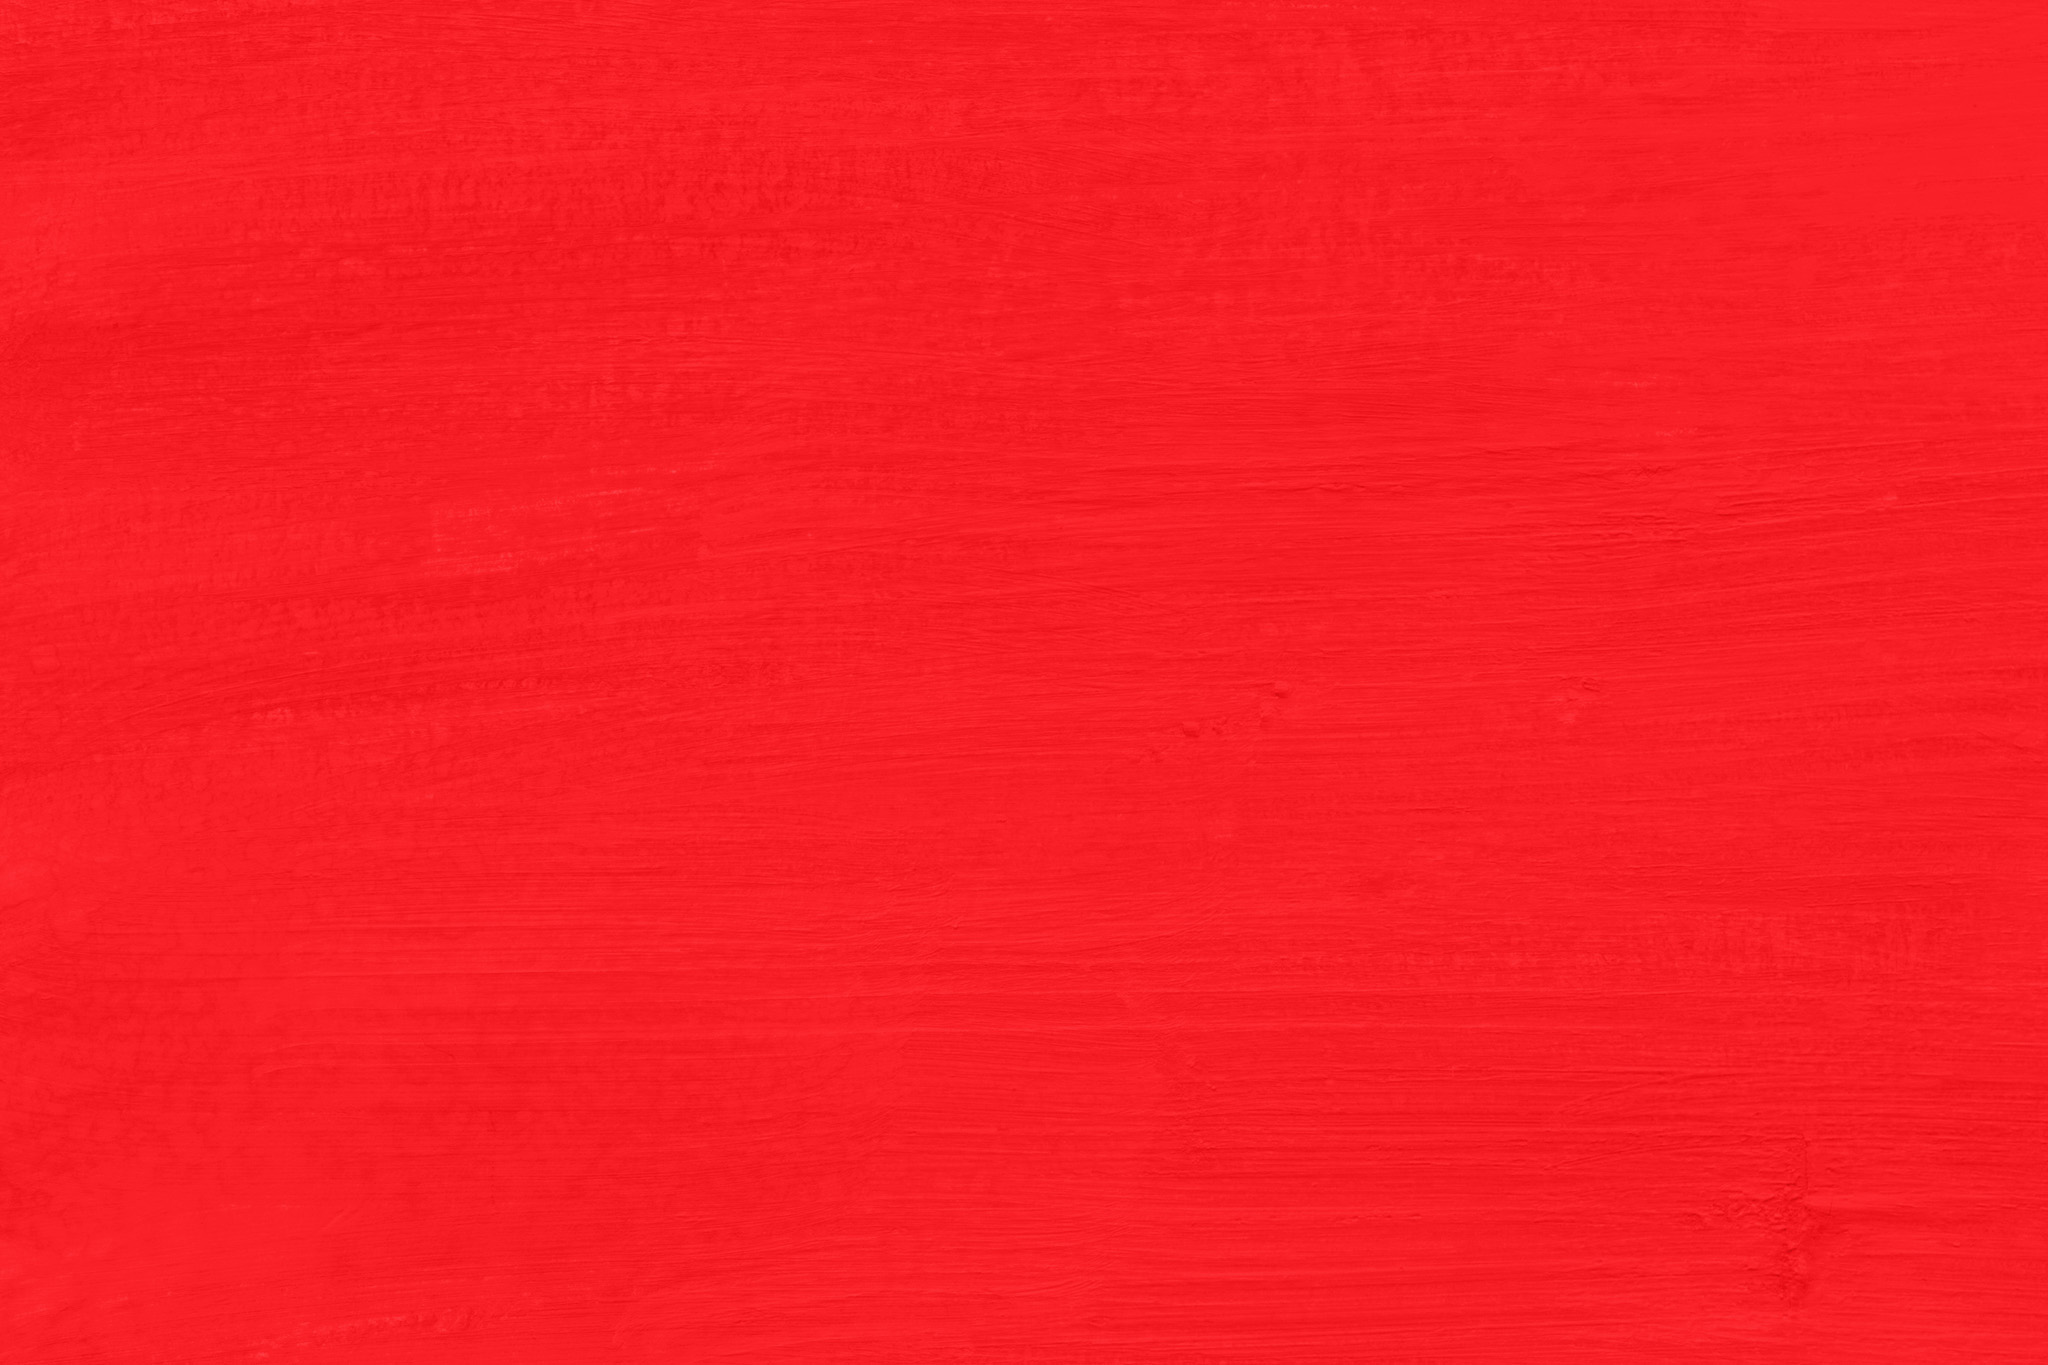 シンプルな赤色の無地の背景 の画像素材を無料ダウンロード 1 フリー素材 Beiz Images